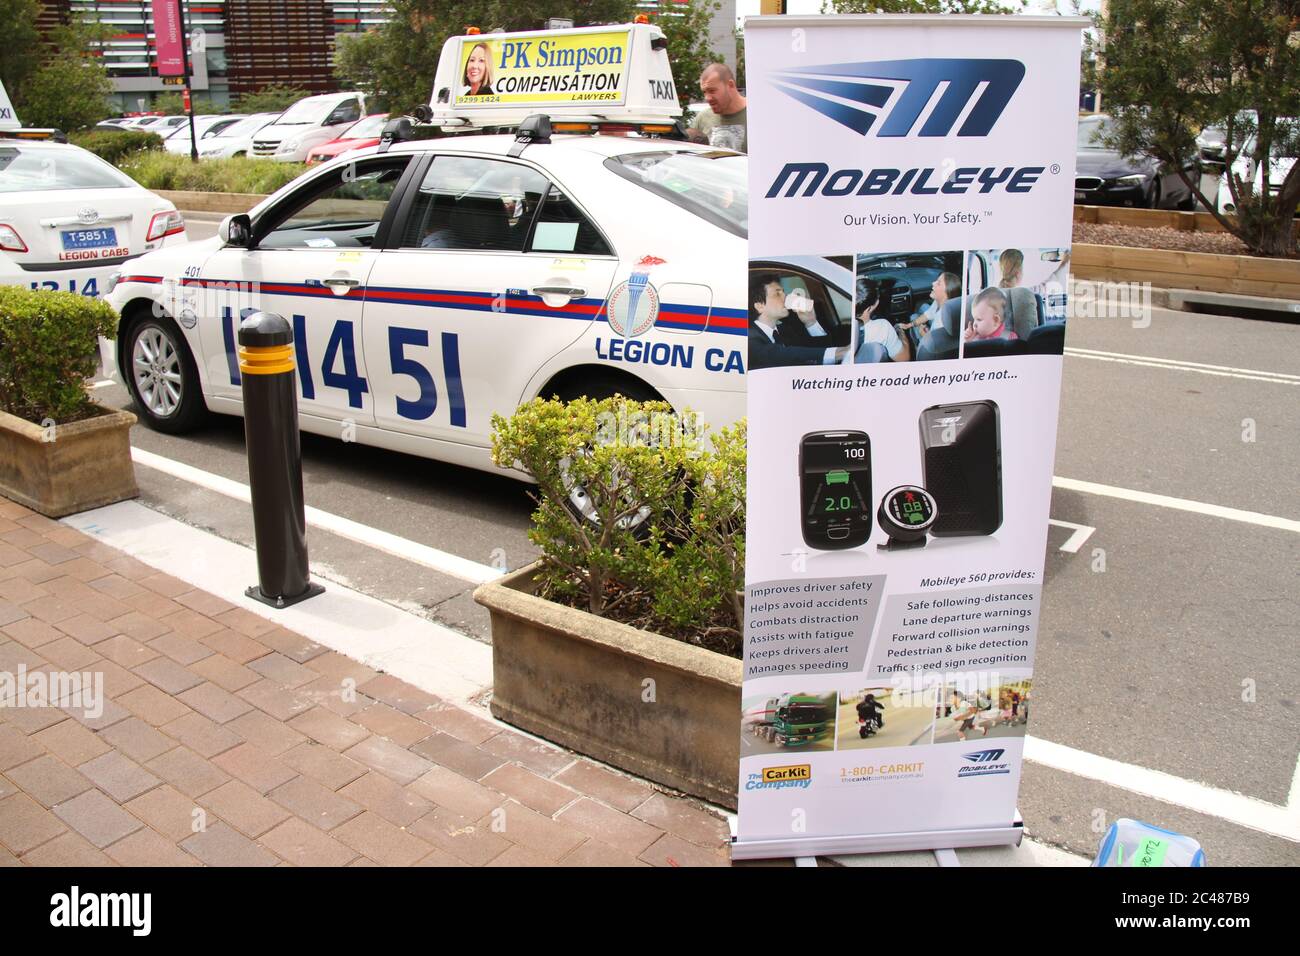 La premiata tecnologia Mobileye sarà tritata a Sydney da metà gennaio al 31 marzo 2014 con un massimo di 20 taxi Legion Cabs. Foto Stock